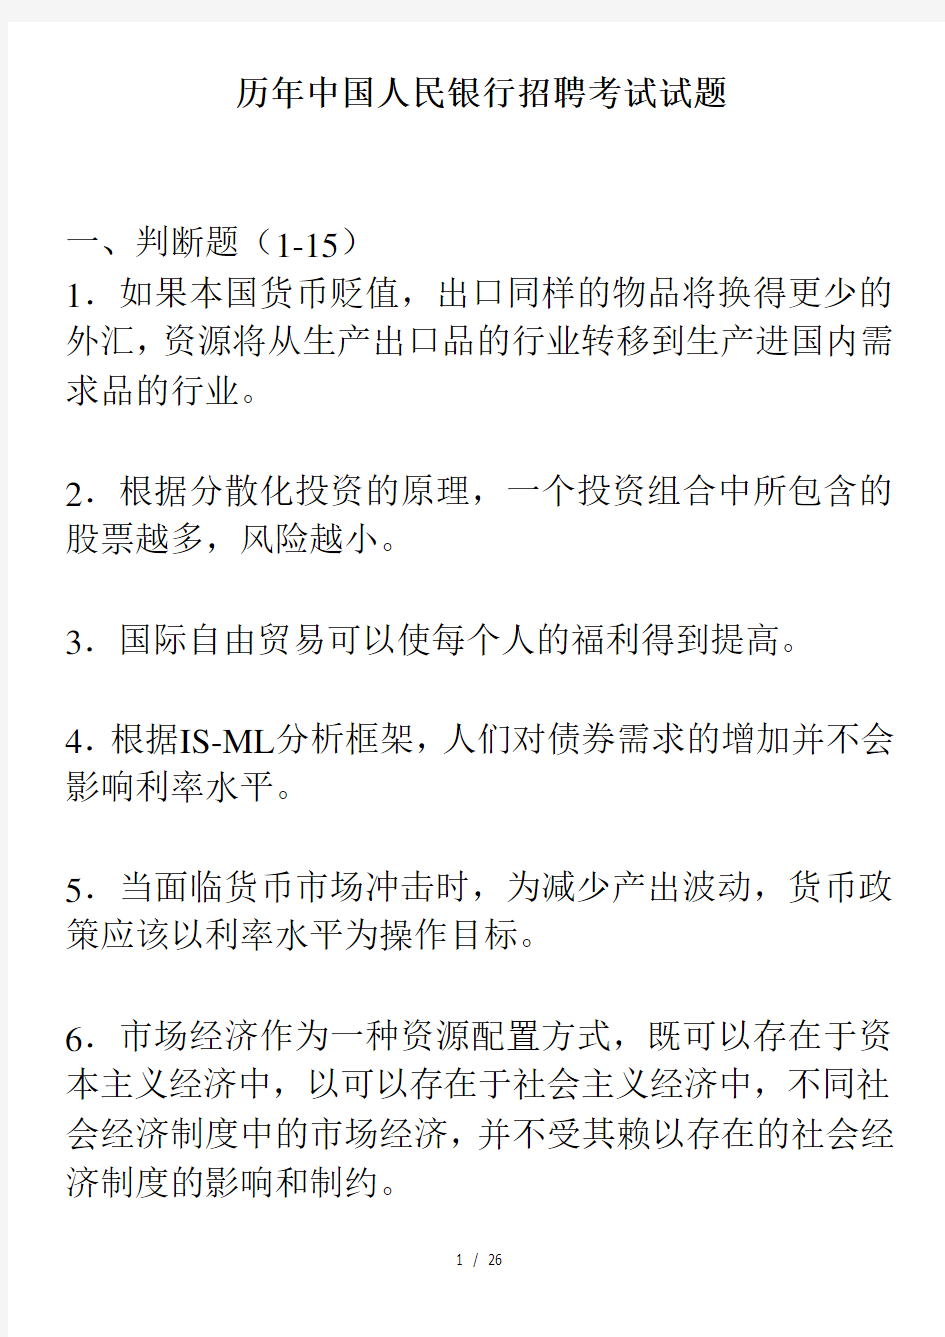 历年中国人民银行招聘考试试题